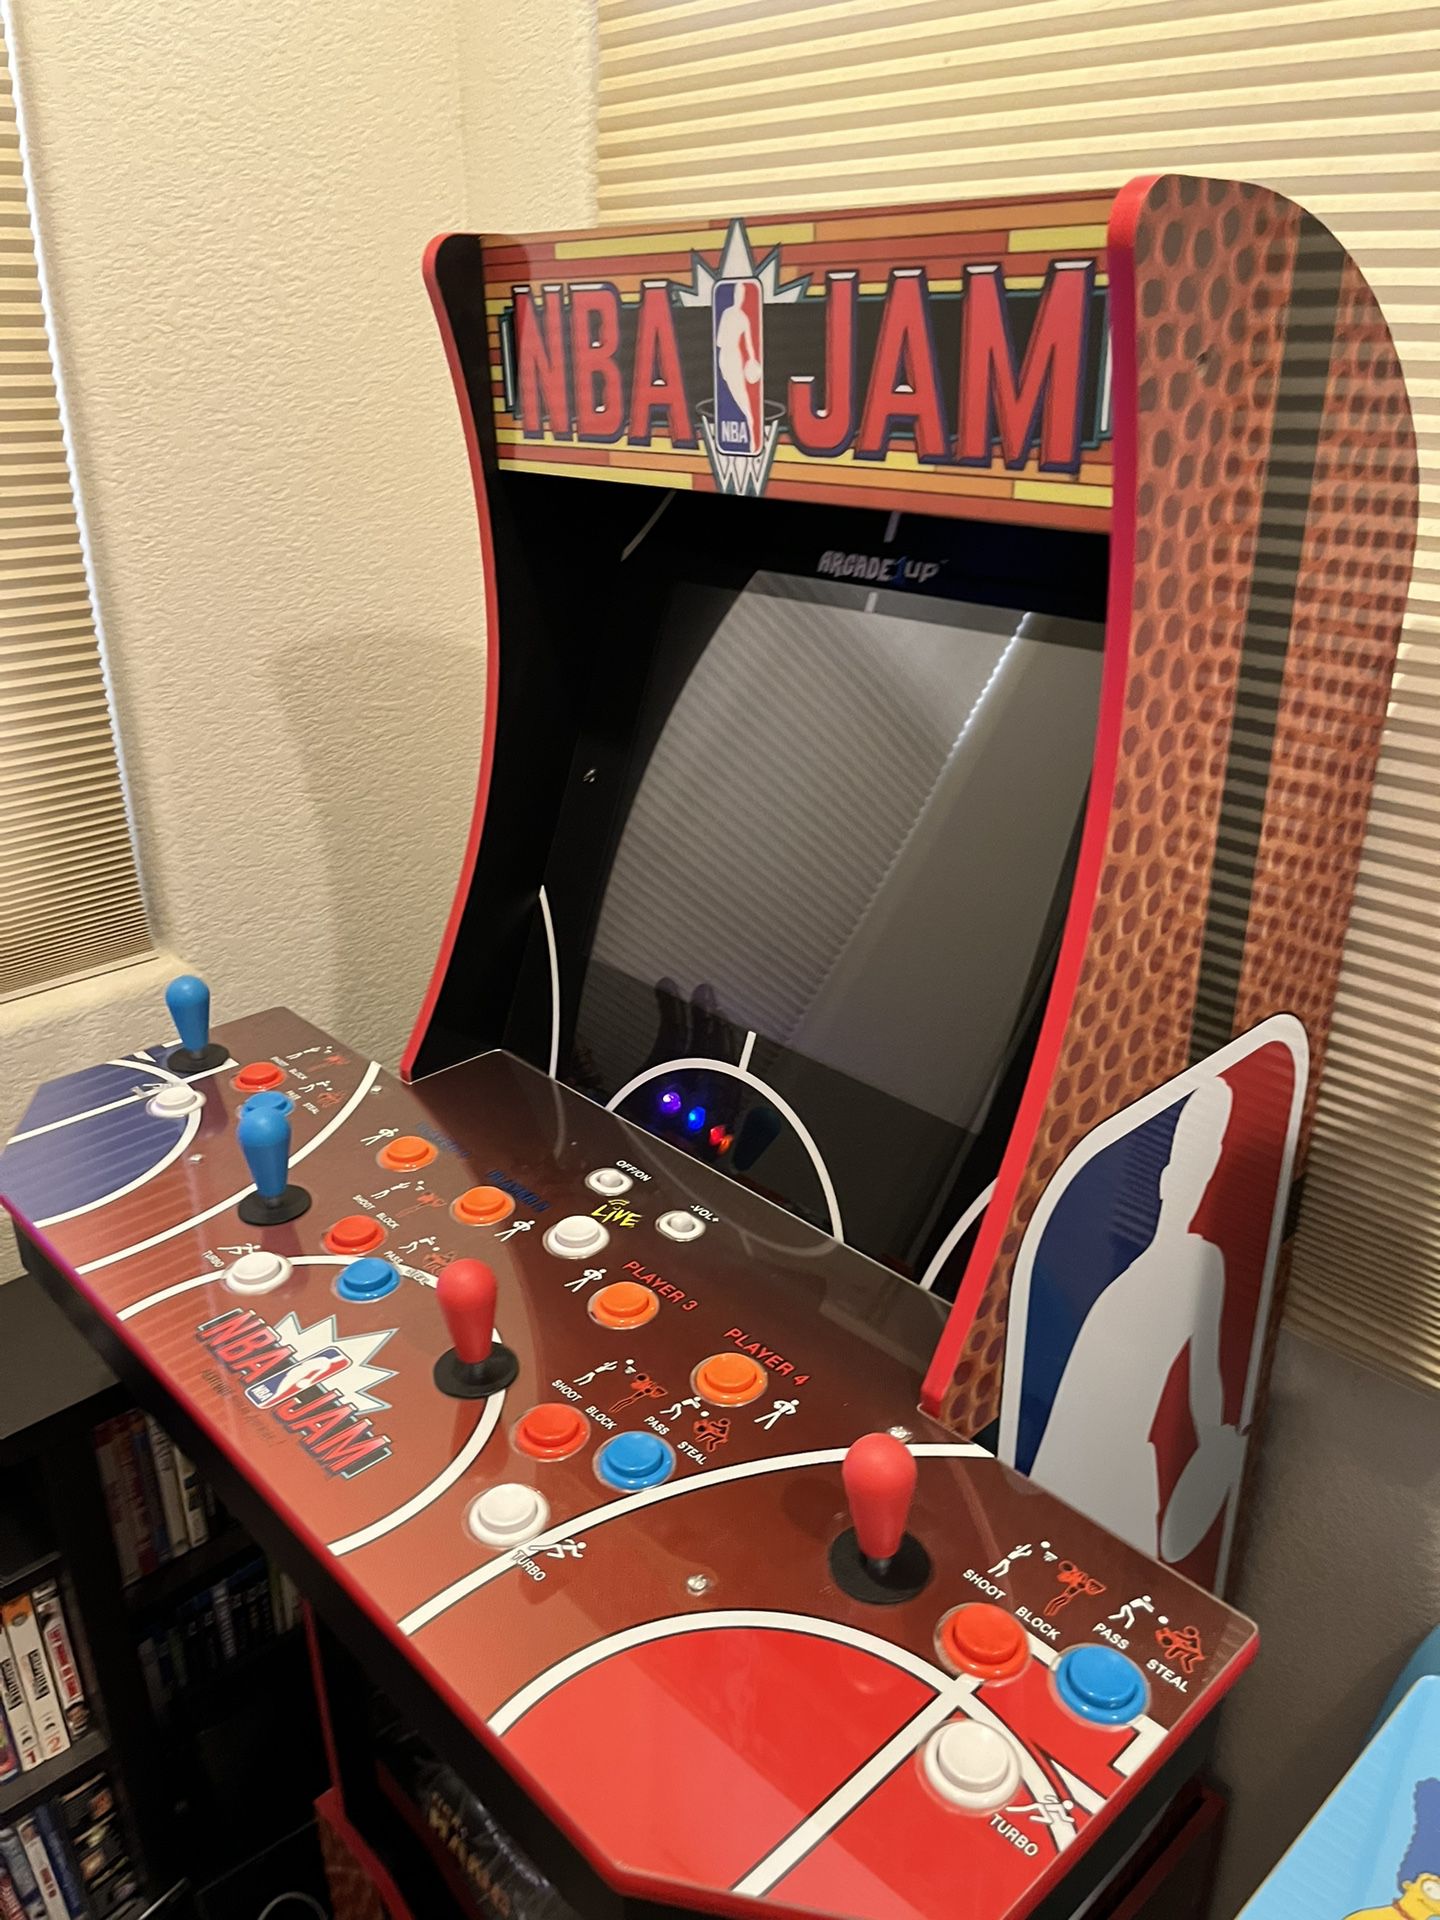 NBA  JAM  Arcade 1UP